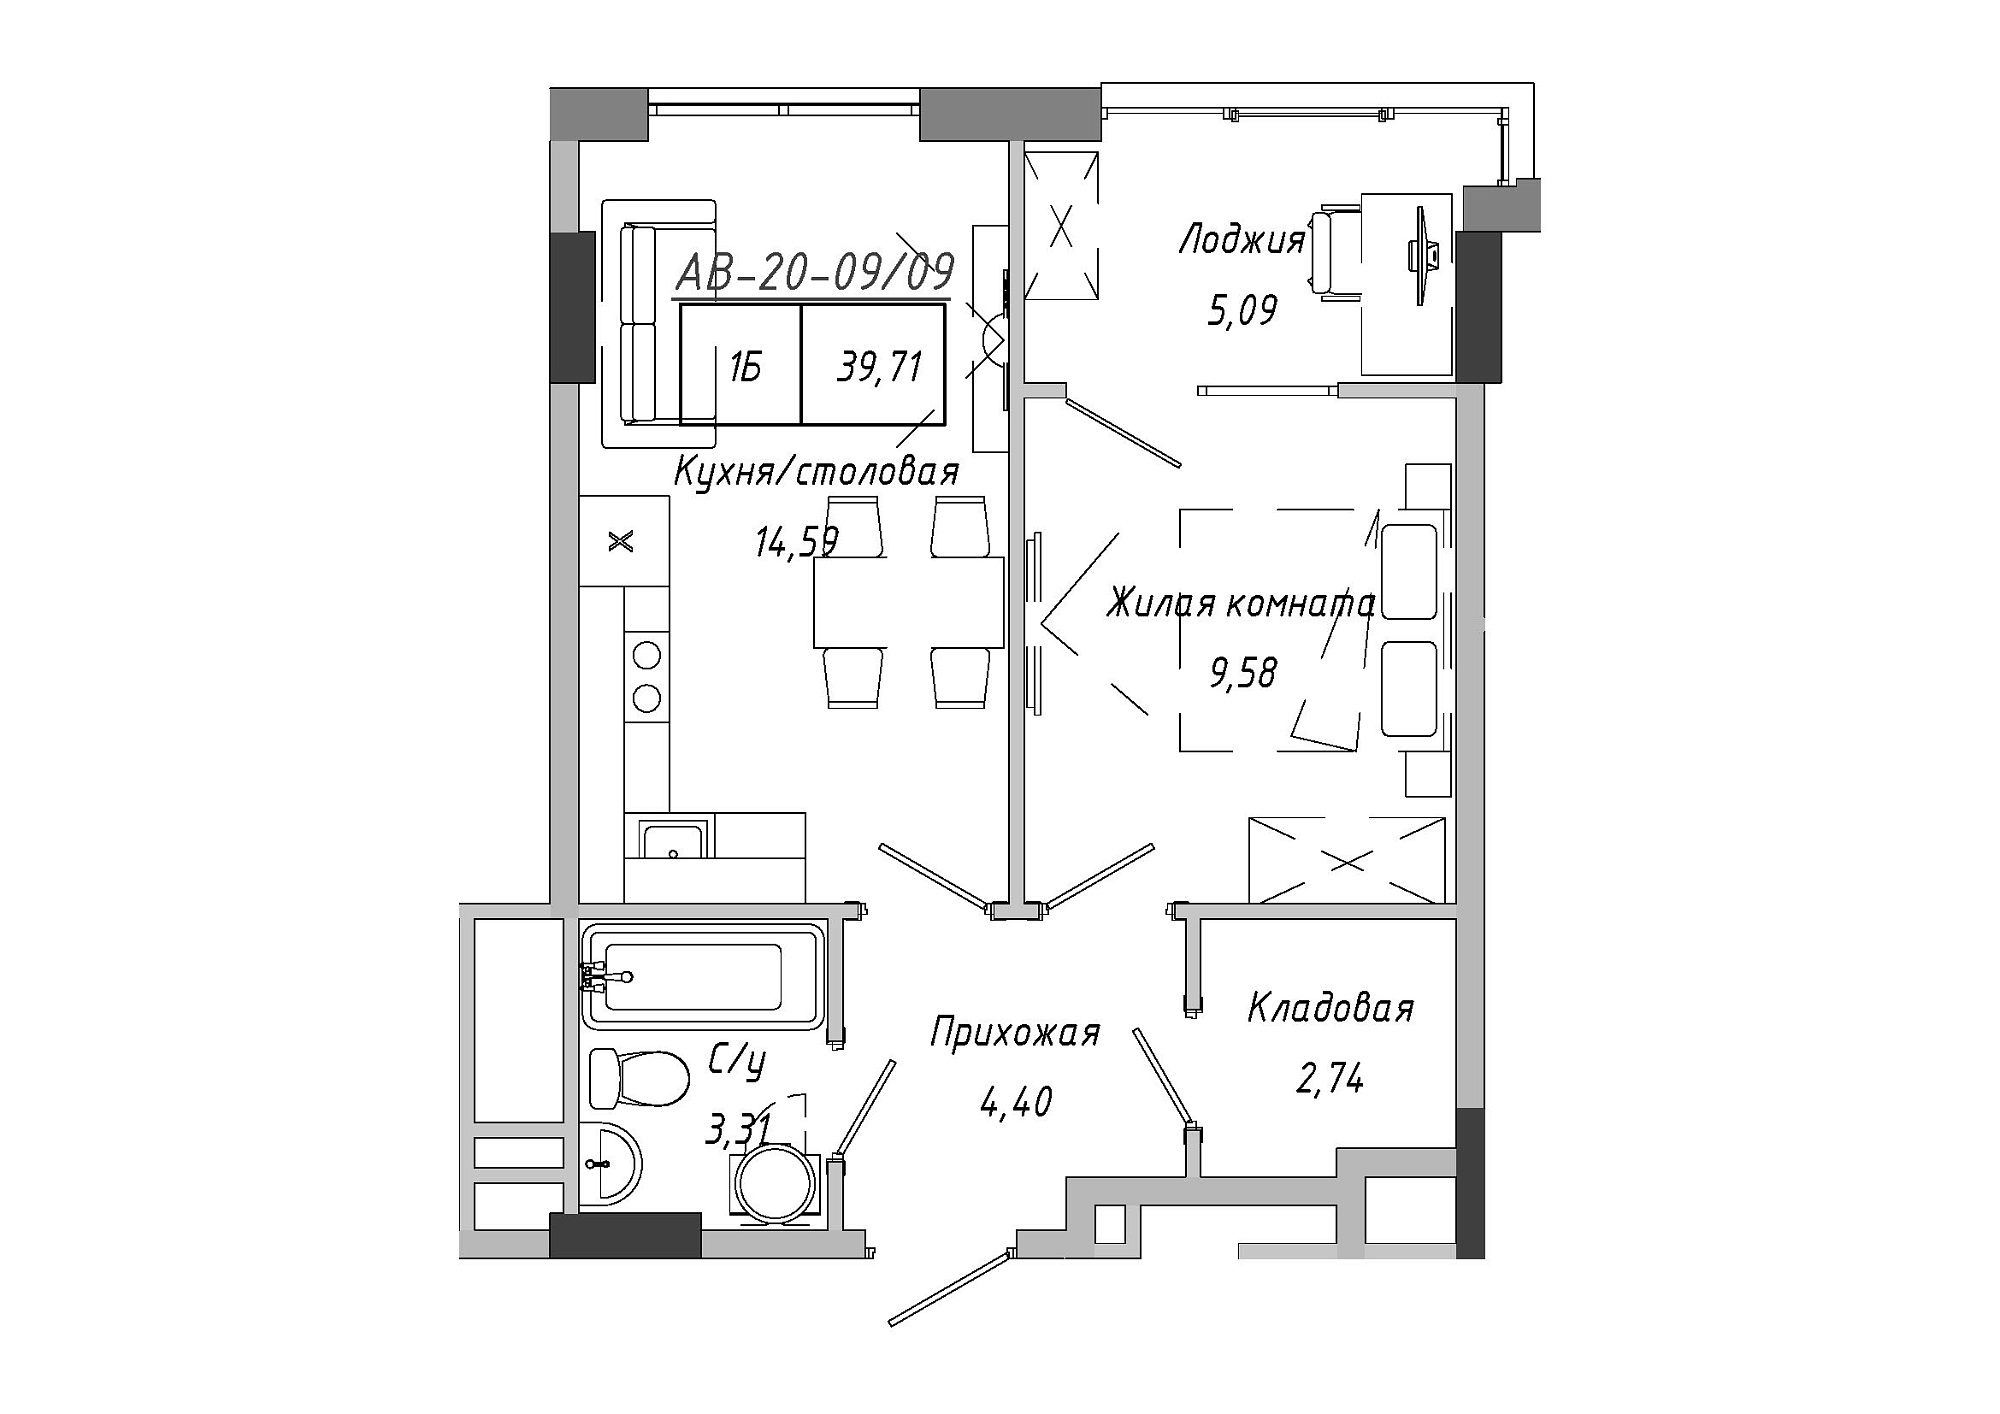 Планировка 1-к квартира площей 37.59м2, AB-20-09/00009.